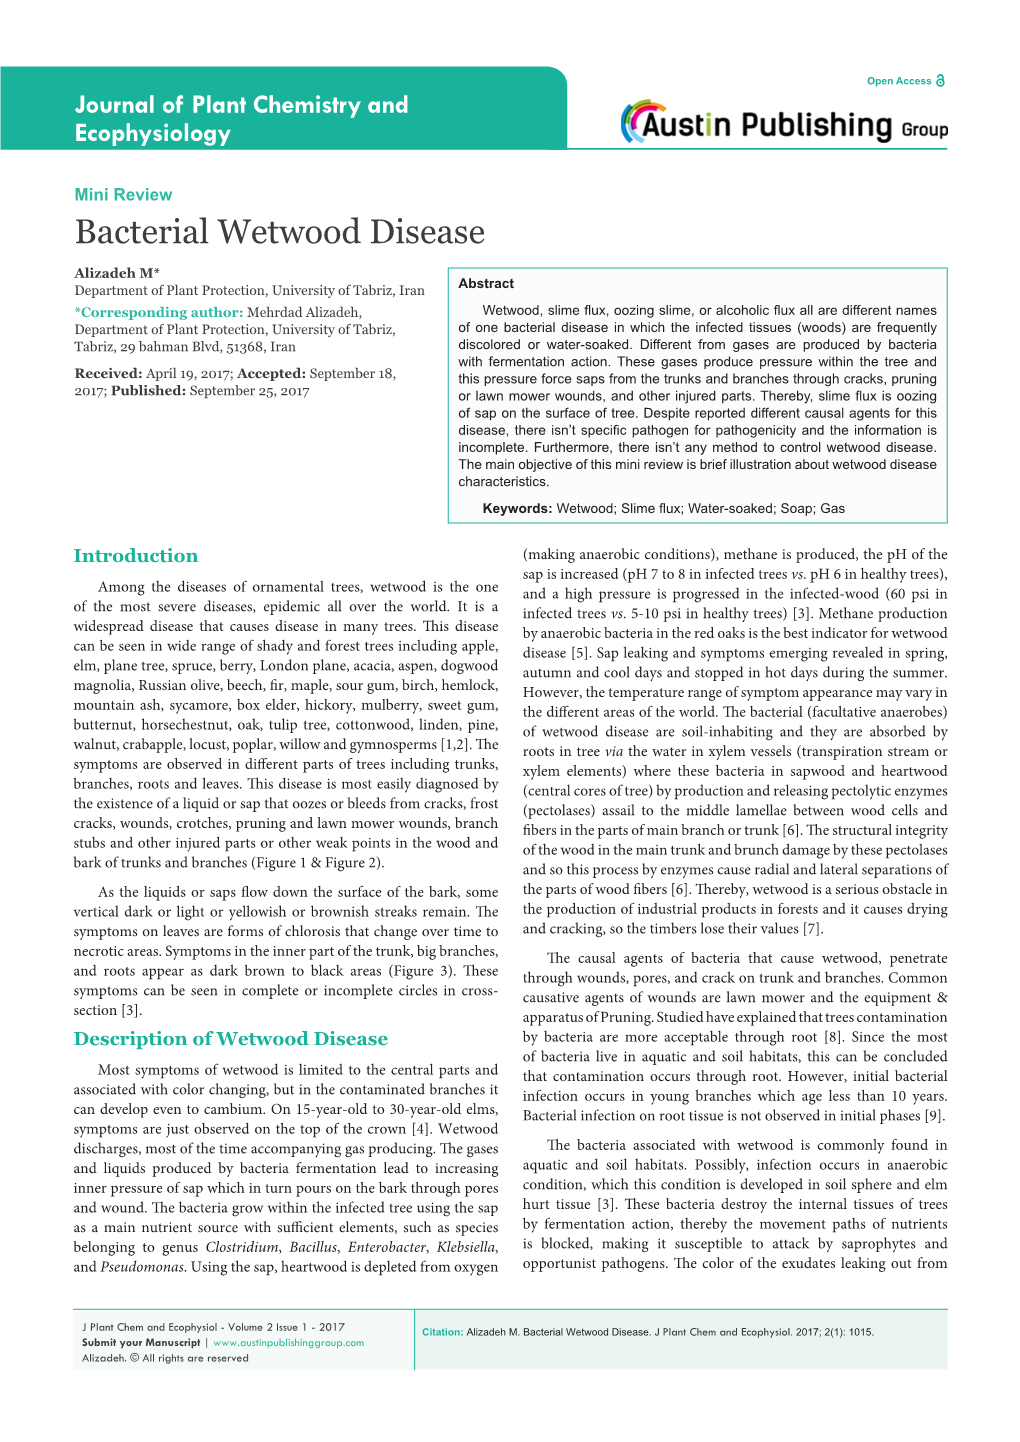 Bacterial Wetwood Disease